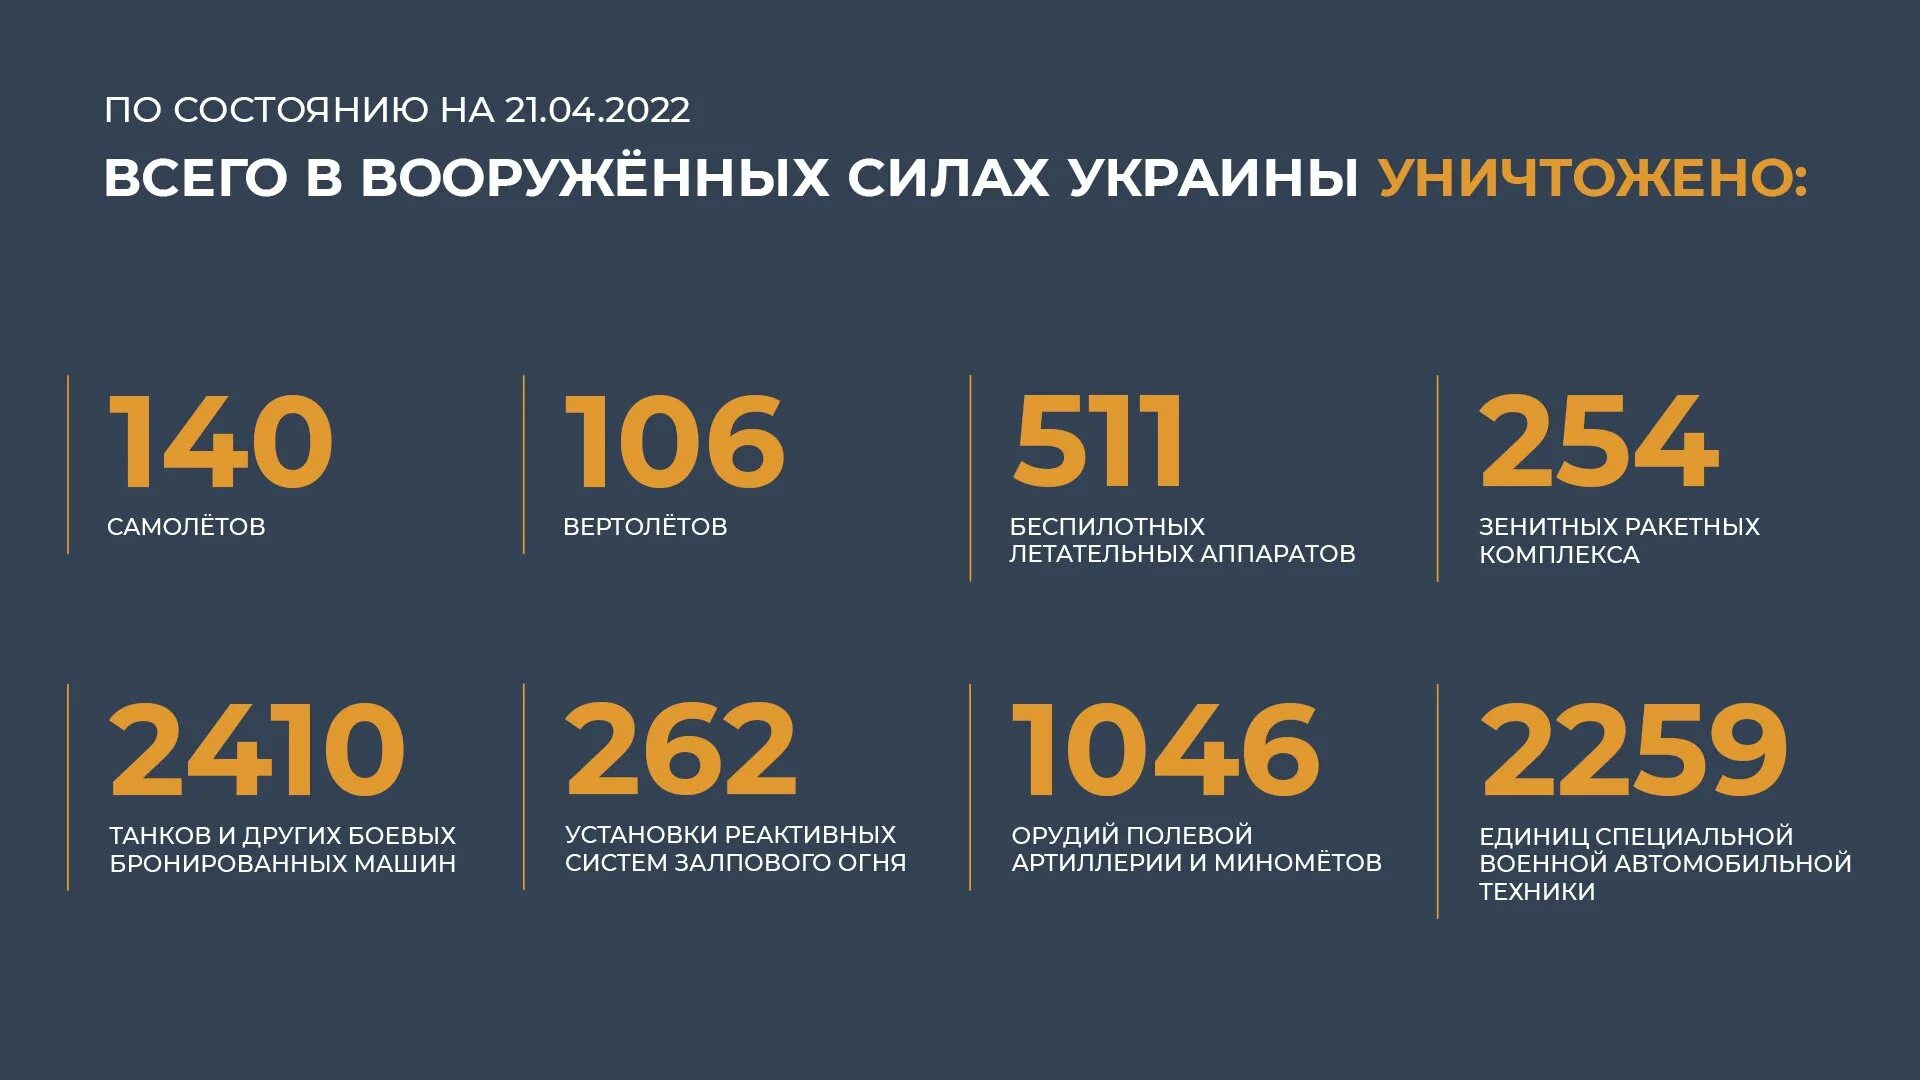 Потери украины 200. Потери Украины. Потери Украины на сегодня в цифрах. Потери Украины на Украине сегодня 2022. Общие потери России.